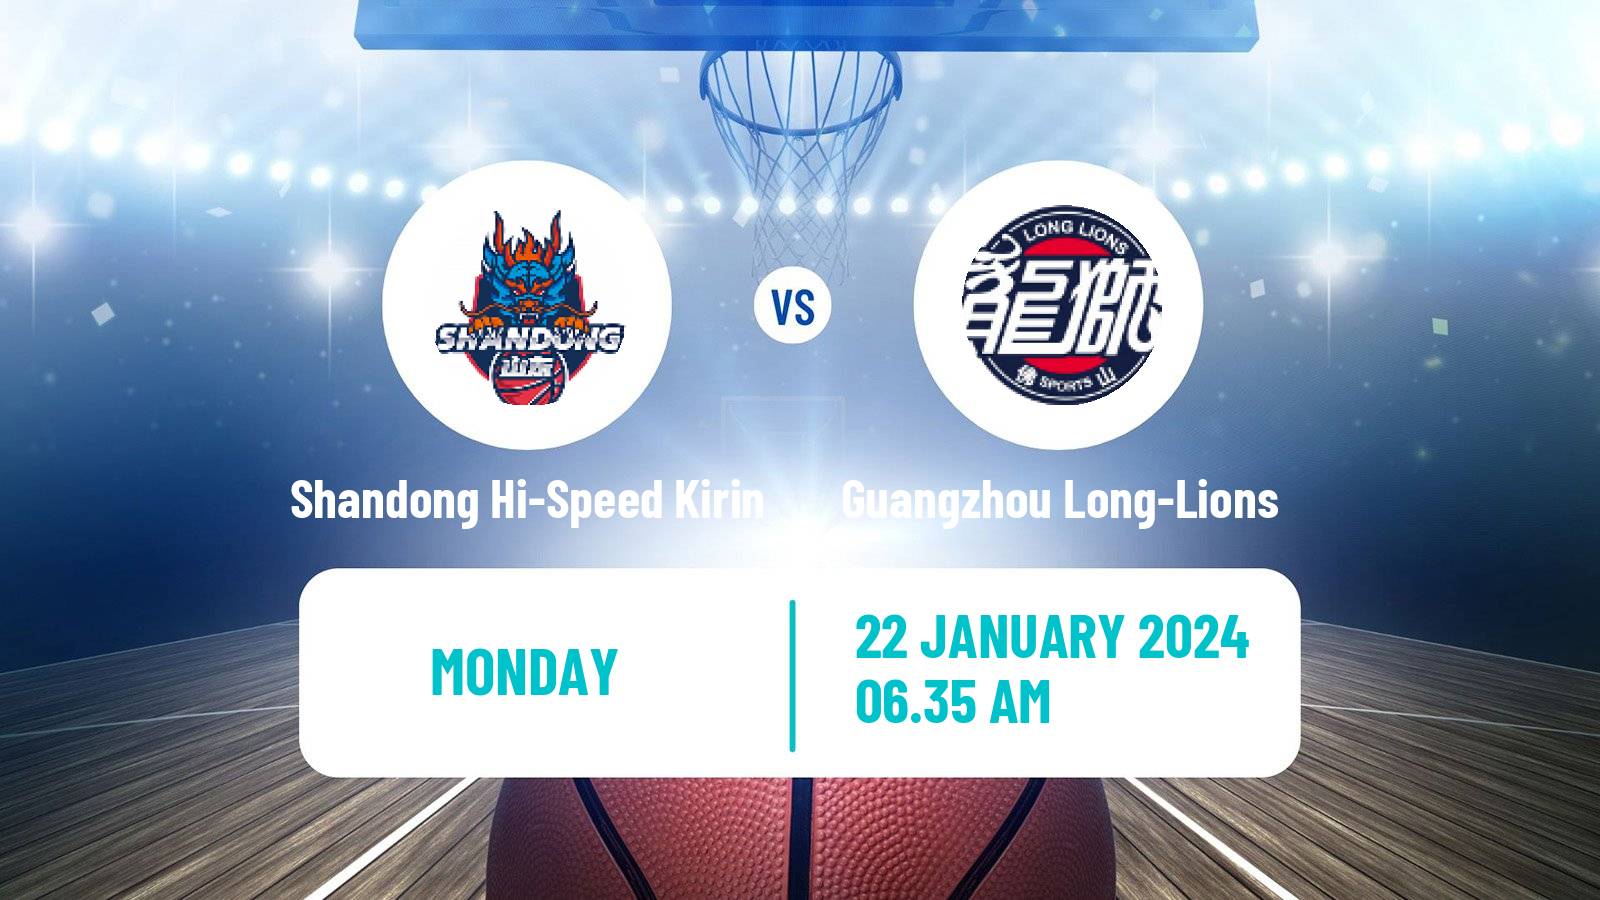 Basketball CBA Shandong Hi-Speed Kirin - Guangzhou Long-Lions